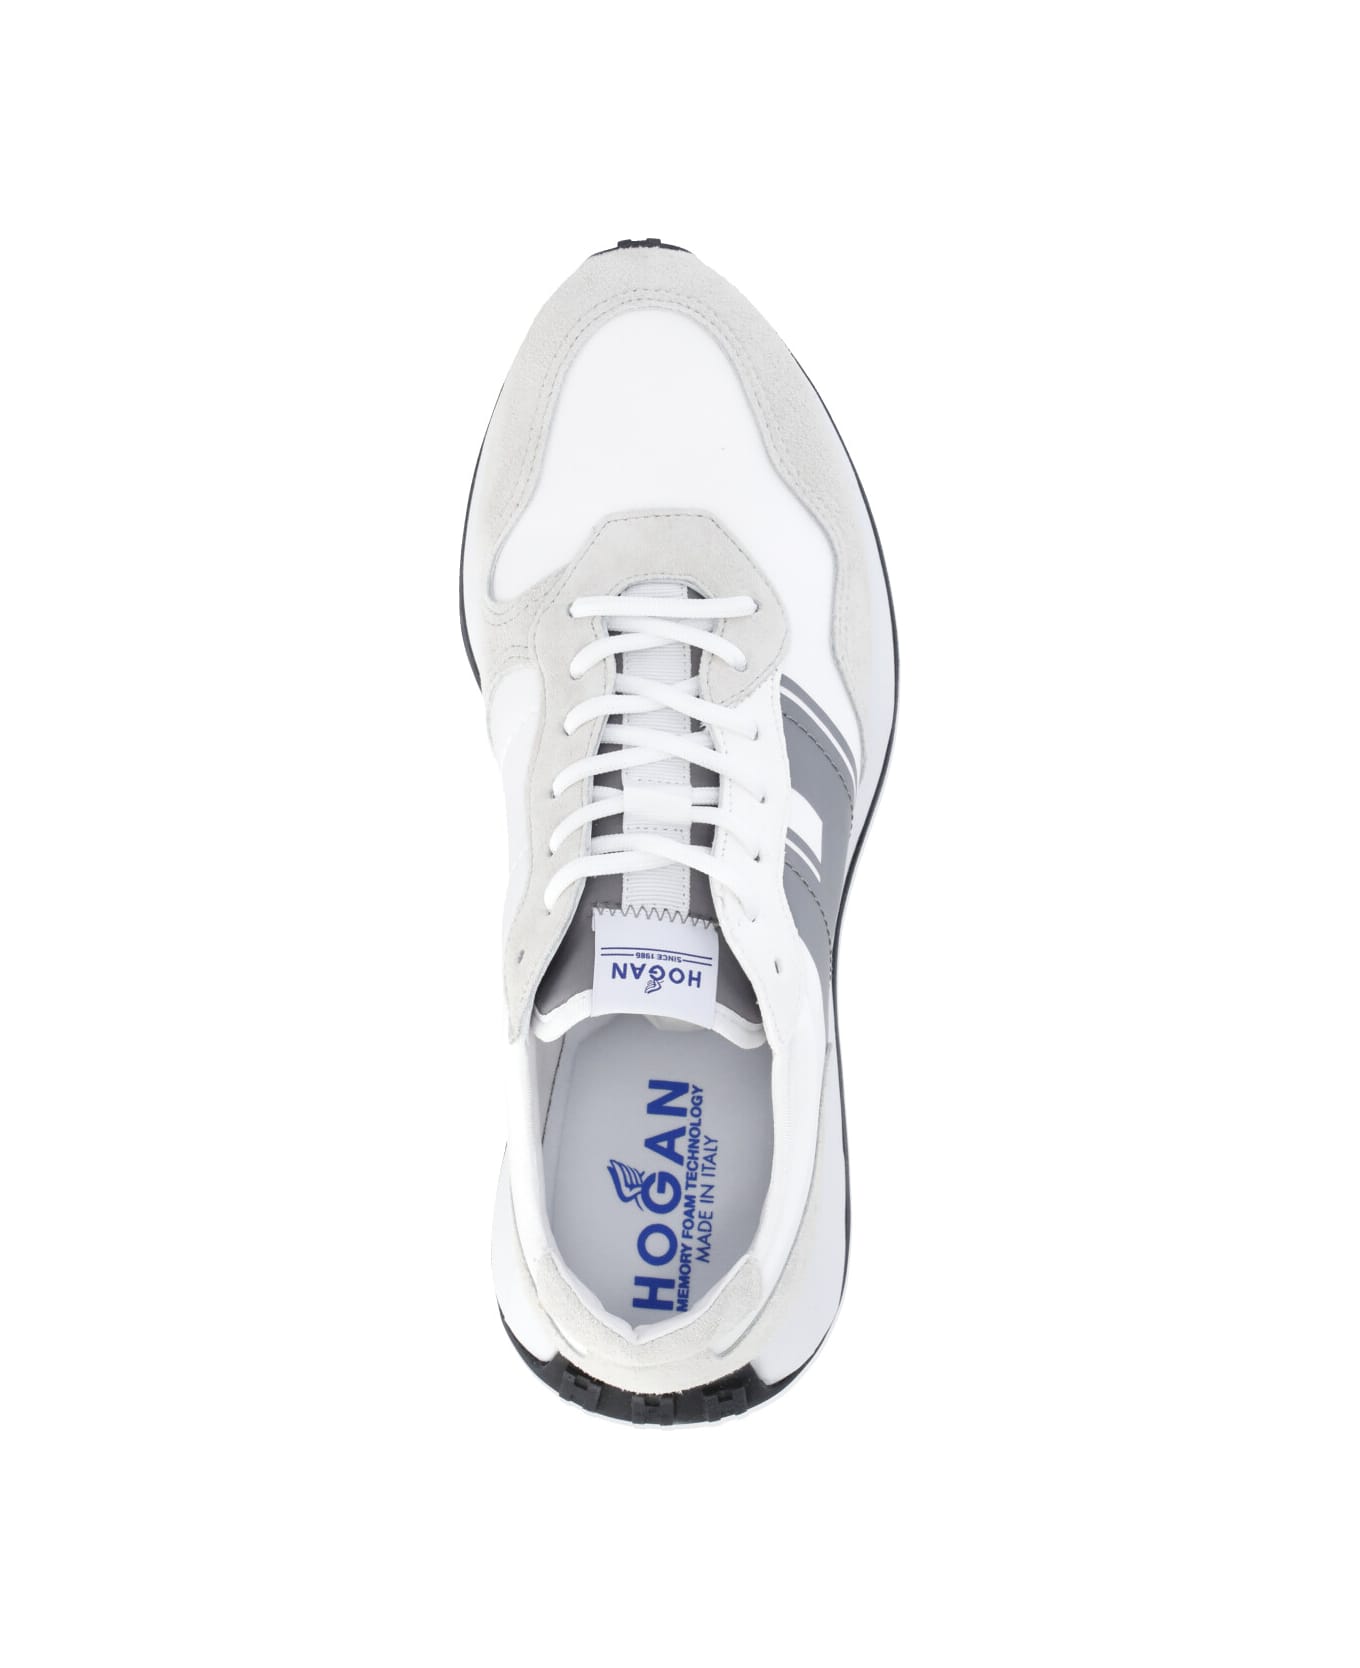 Hogan H601 Sneakers - White スニーカー